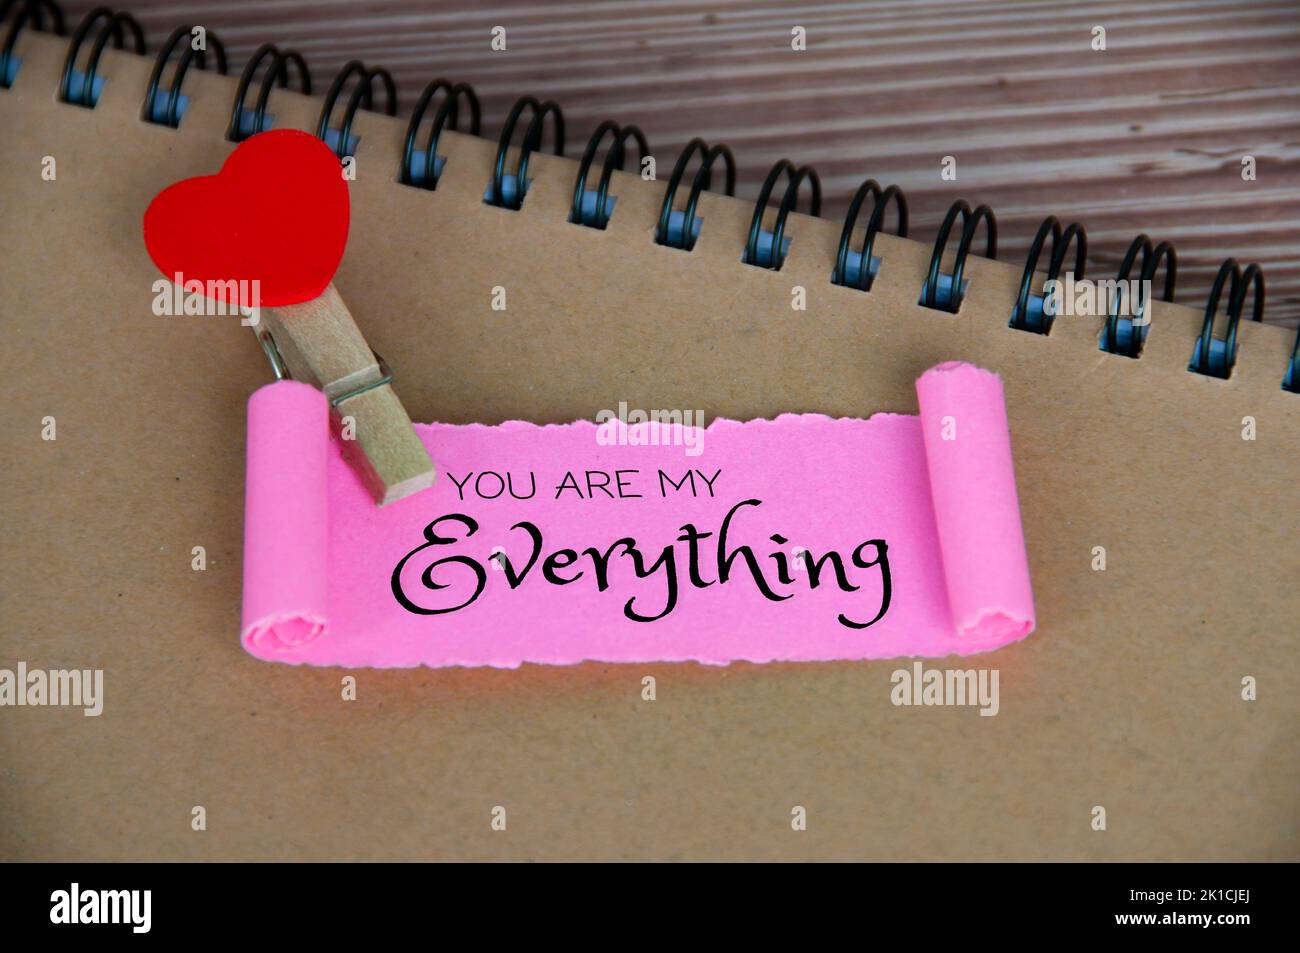 Du bist mein Everything Text auf zerrissenem rosafarbenem Papier. Romantik und Beziehungskonzept. Stockfoto